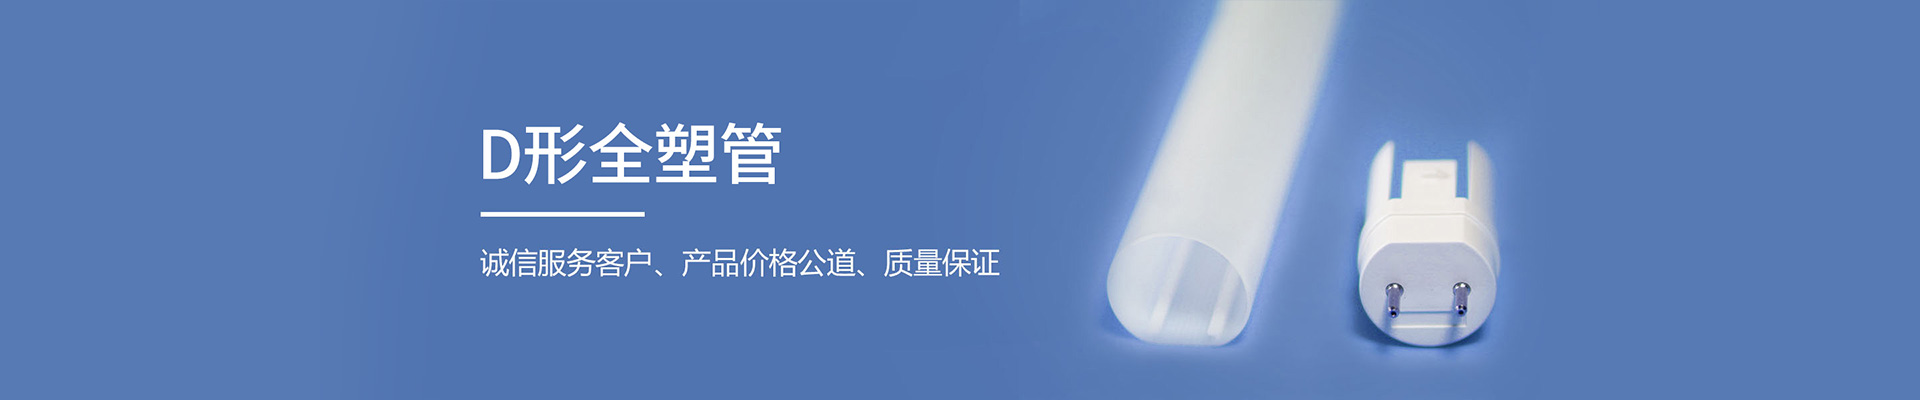 深圳市隆森塑膠電子有限公司公司介紹